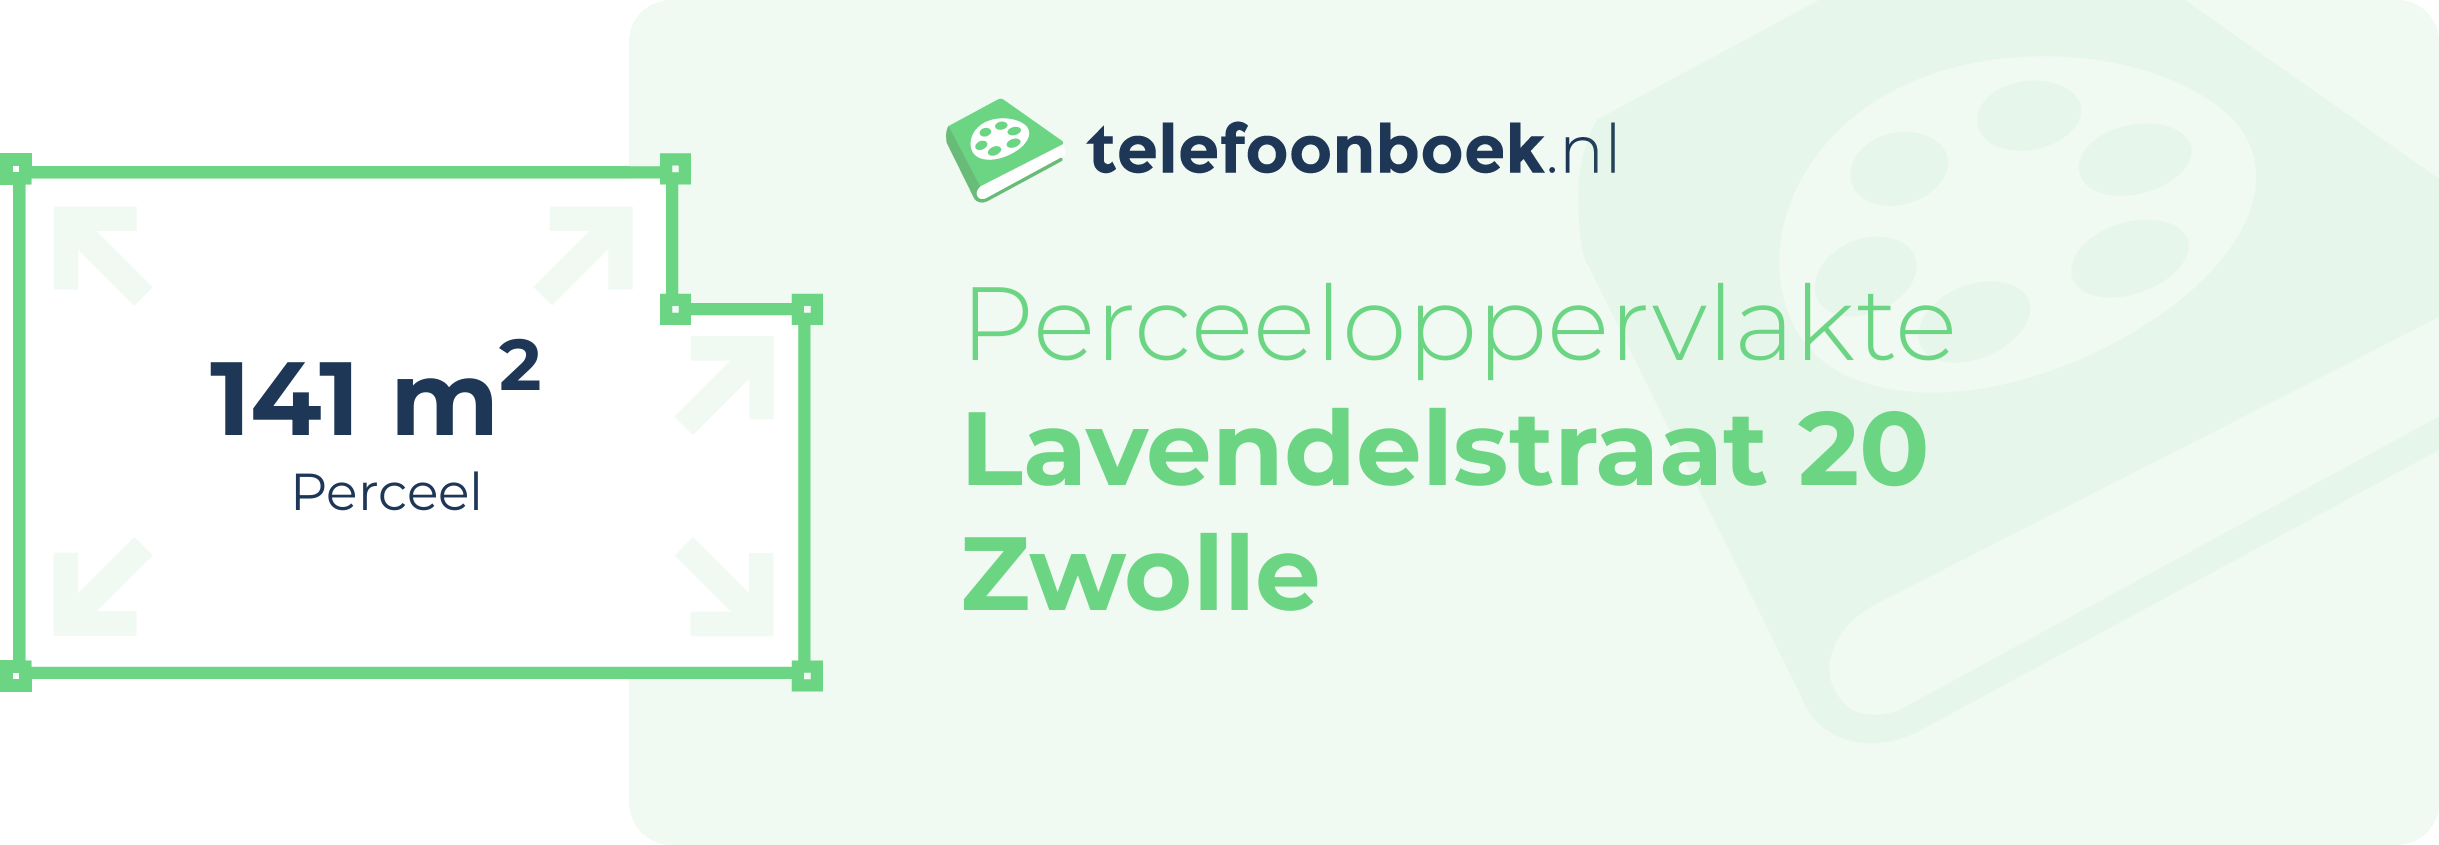 Perceeloppervlakte Lavendelstraat 20 Zwolle